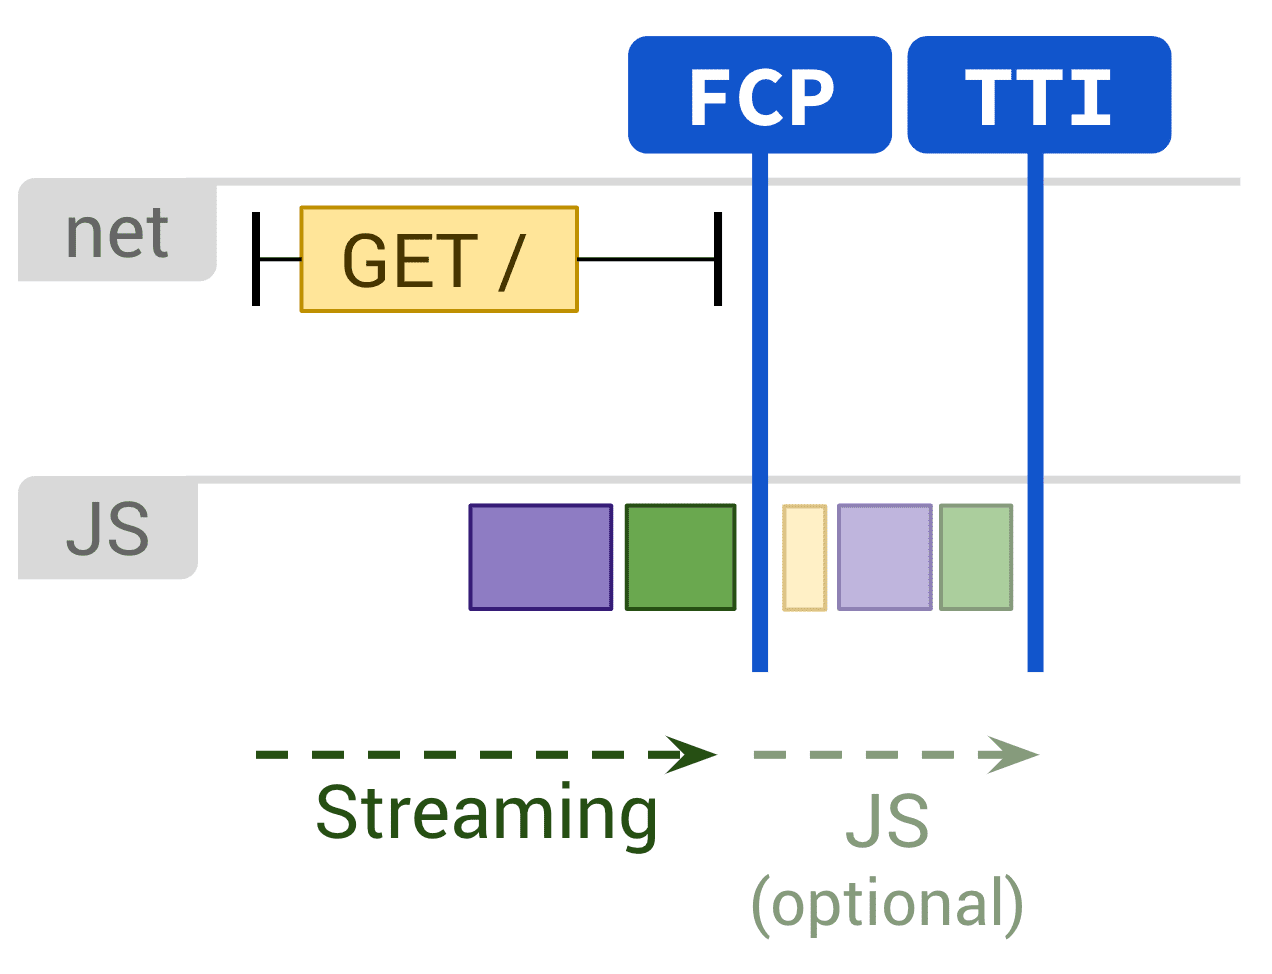 แผนภาพที่แสดงการแสดงผลแบบคงที่และการดำเนินการ JS ที่ไม่บังคับซึ่งส่งผลต่อ FCP และ TTI